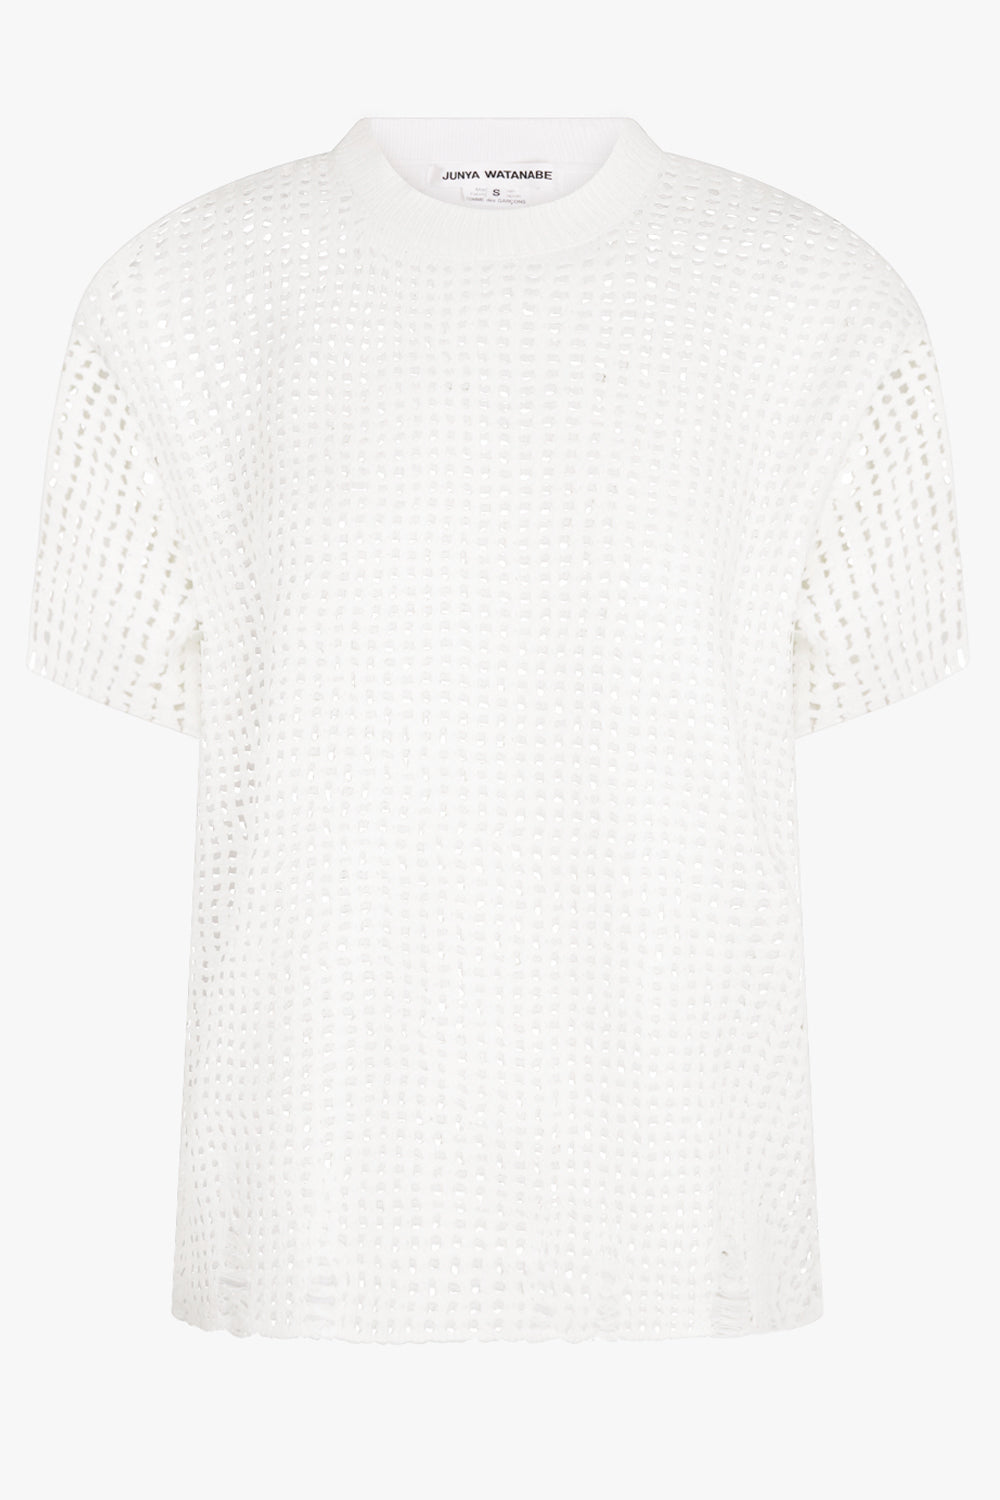 JUNYA WATANABE RTW Mesh Overlay S/S Distressed Knit T-Shirt Top | White